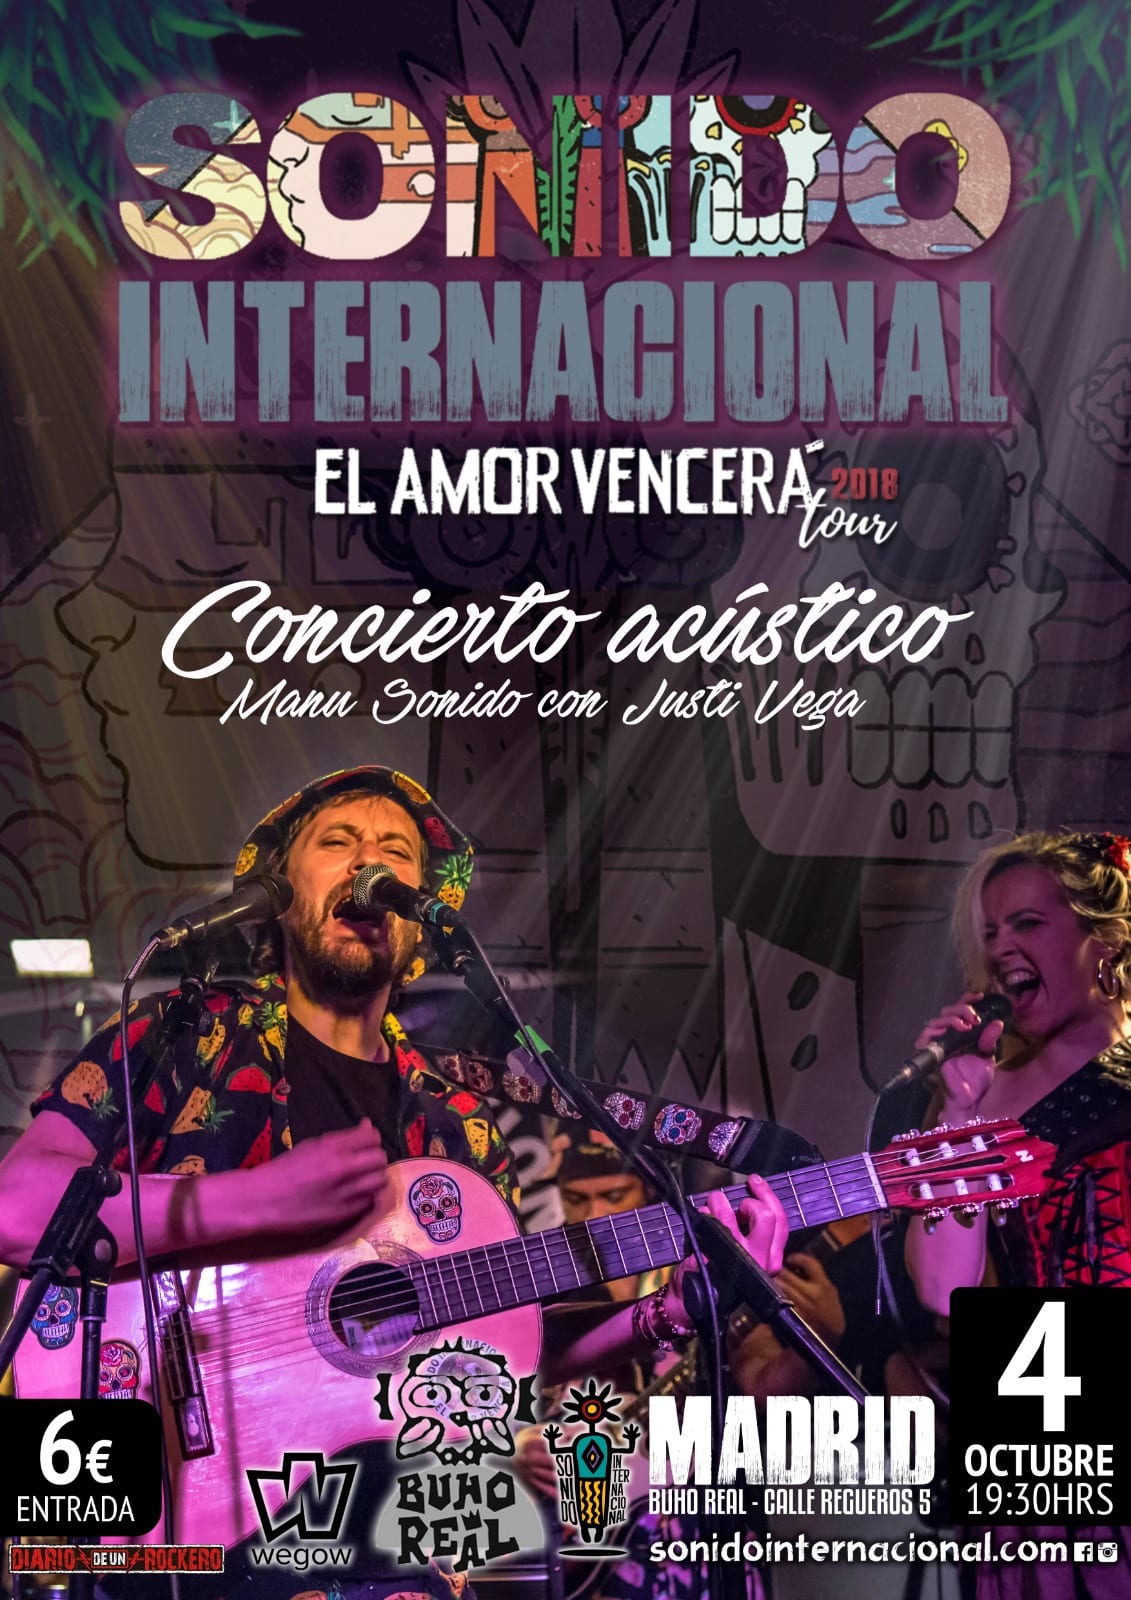 SONIDO INTERNACIONAL concierto en Madrid el próximo día 4 de octubre